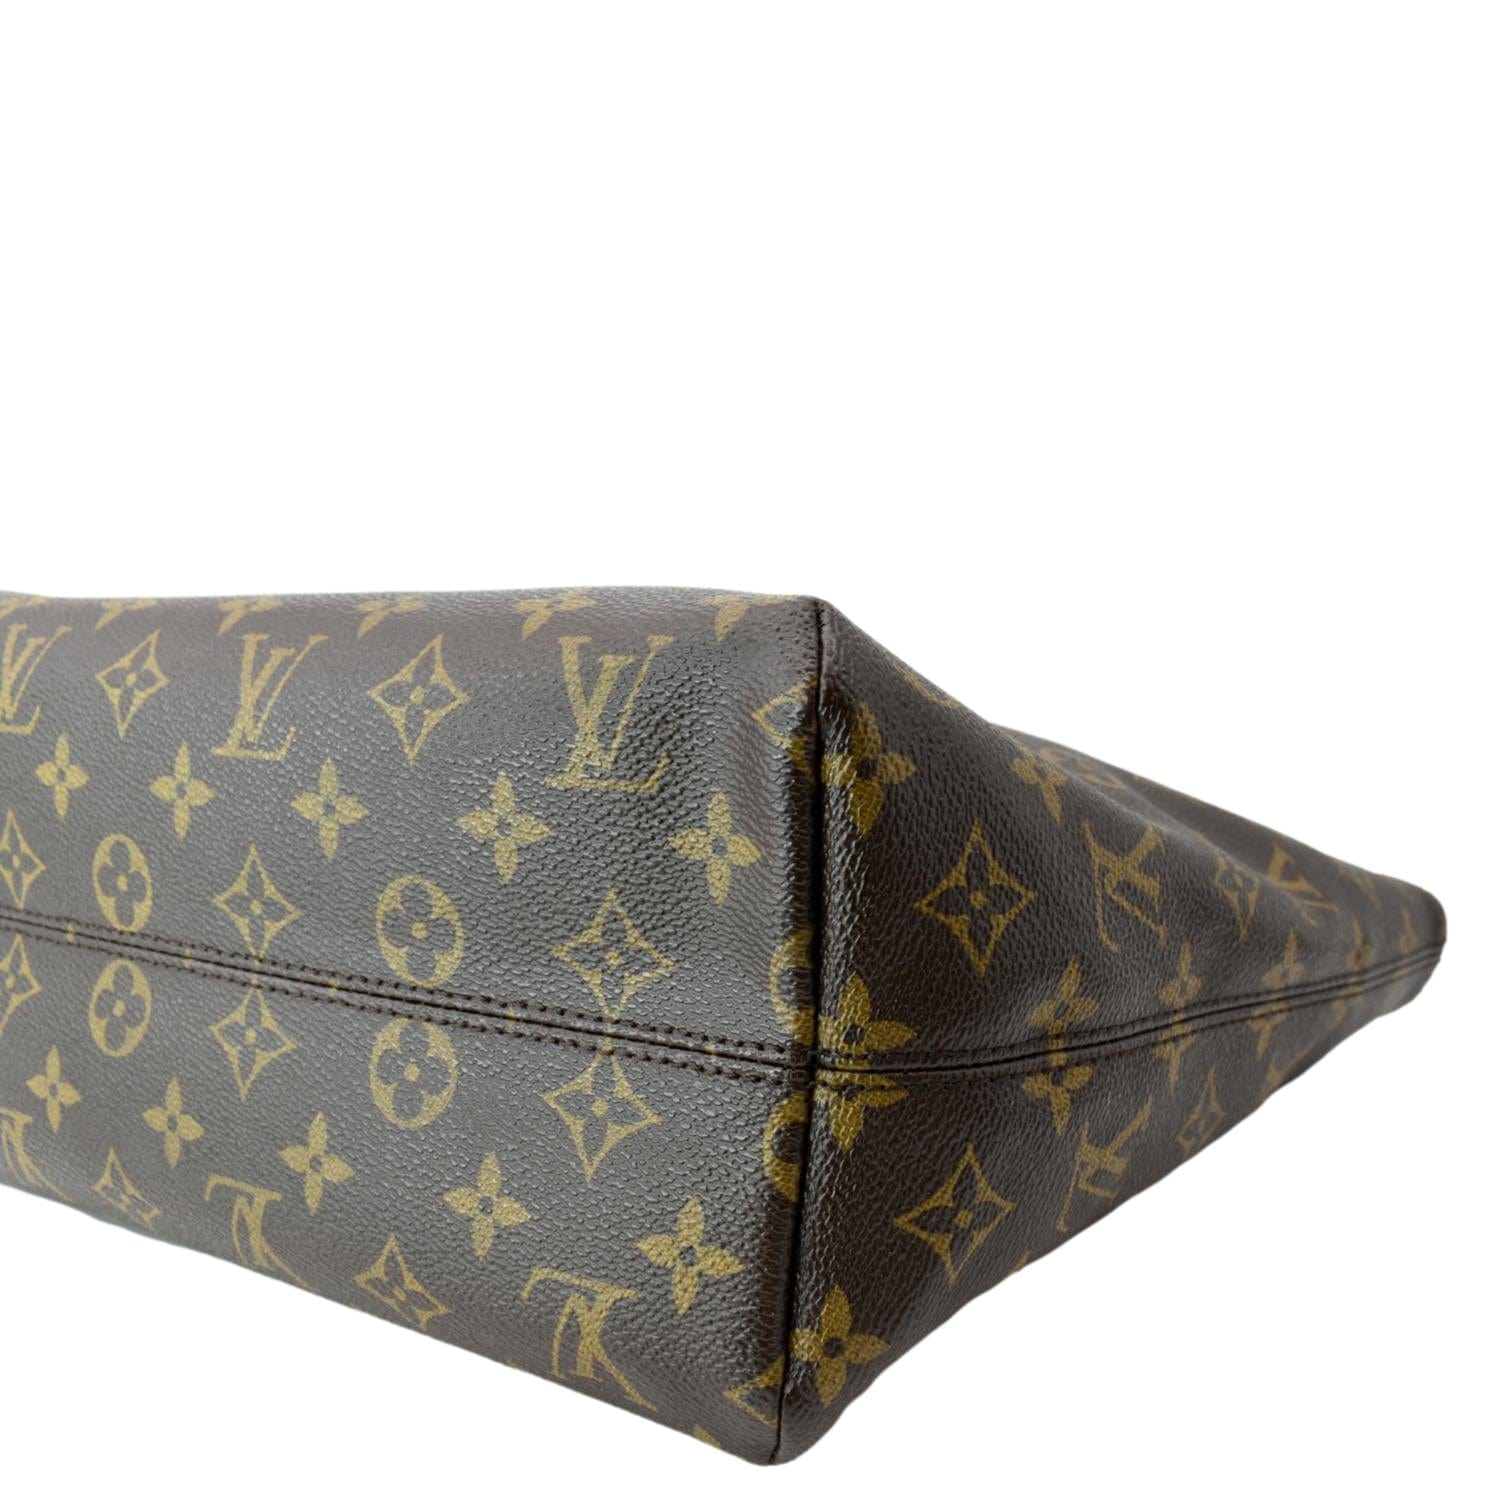 Louis Vuitton Raspail - For Sale on 1stDibs  louis vuitton raspail gm, lv  raspail, louis vuitton raspail pm